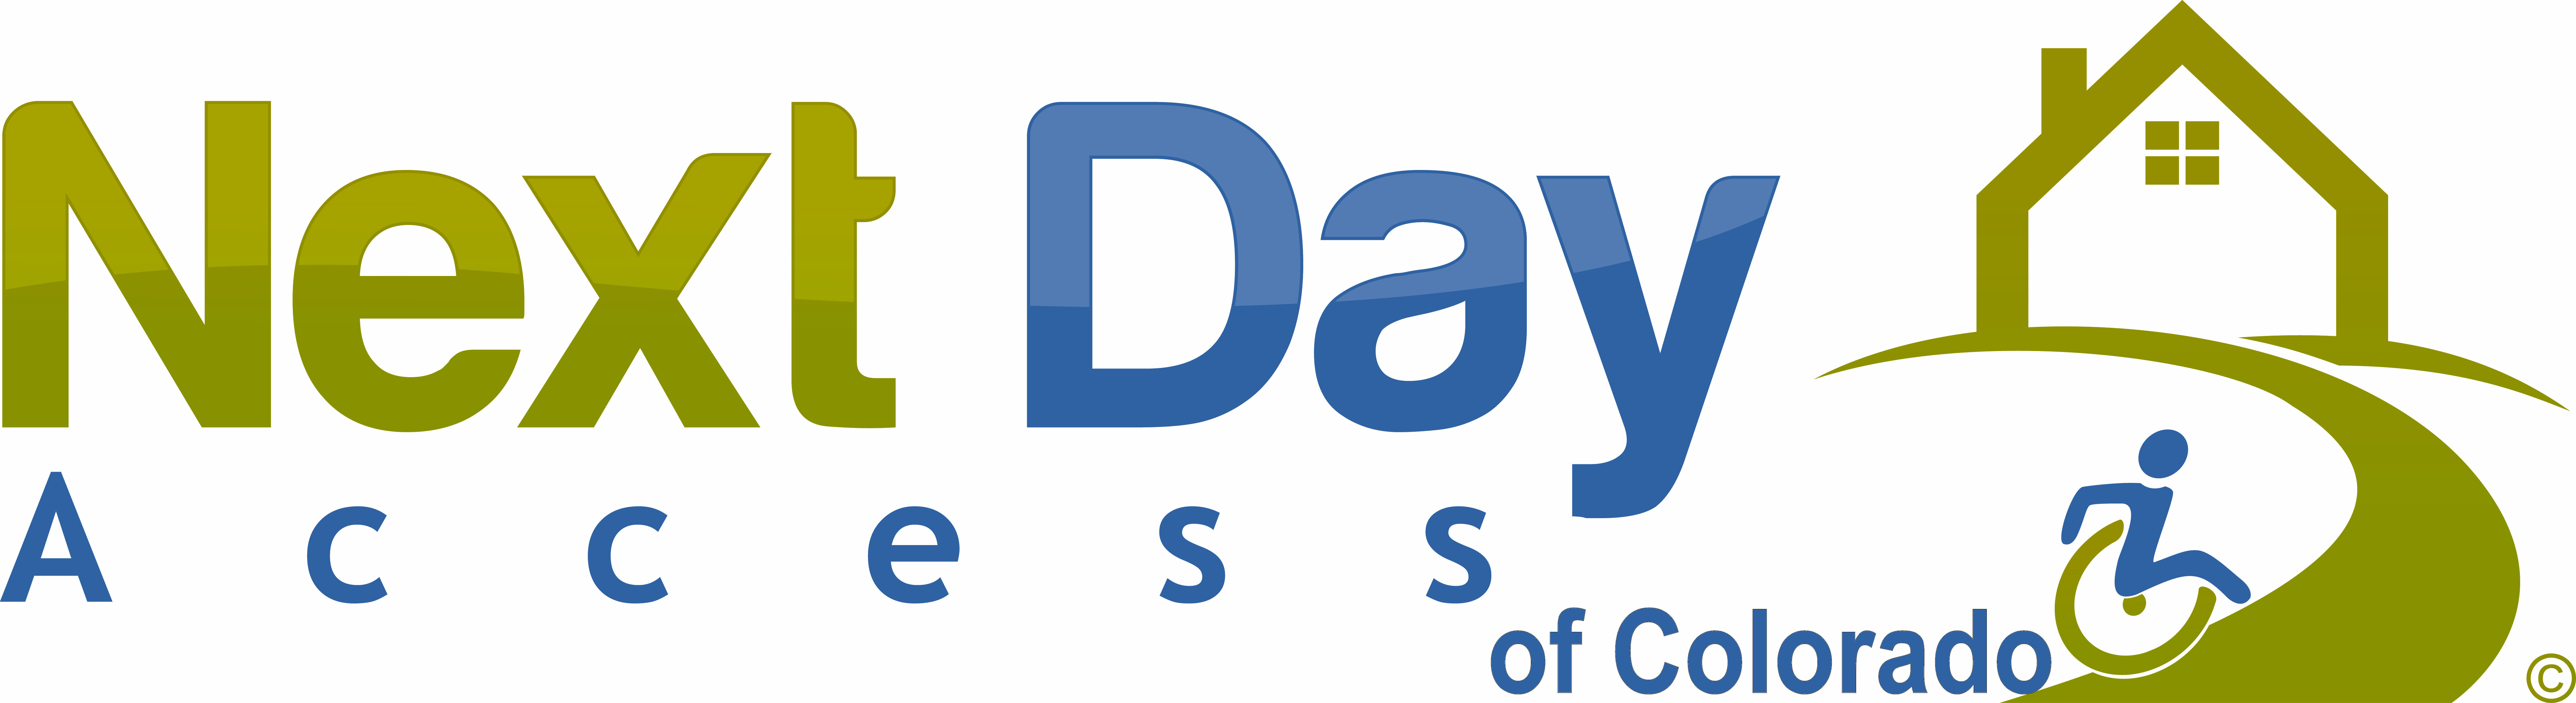 Next Day Access Colorado, Inc. Logo